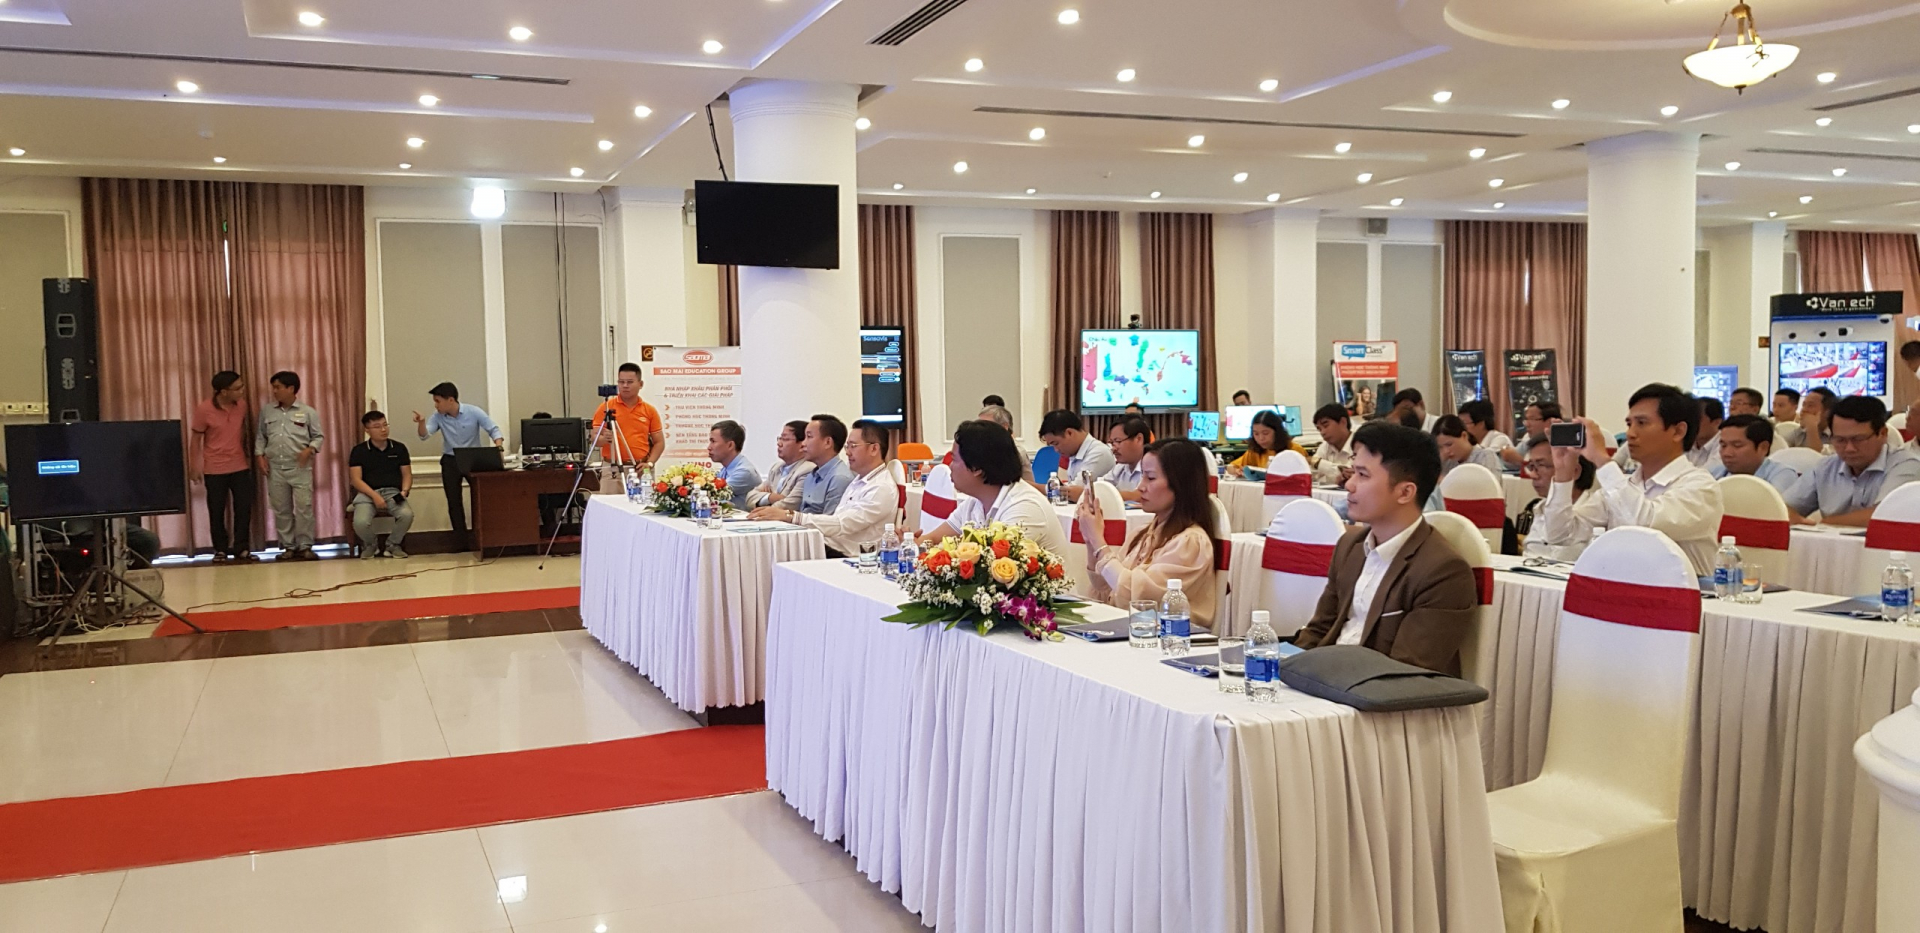 Tổng kết buổi hội thảo  “Giới thiệu sản phẩm công nghệ - Chuyên ngành giáo dục” tại tỉnh Quảng Nam